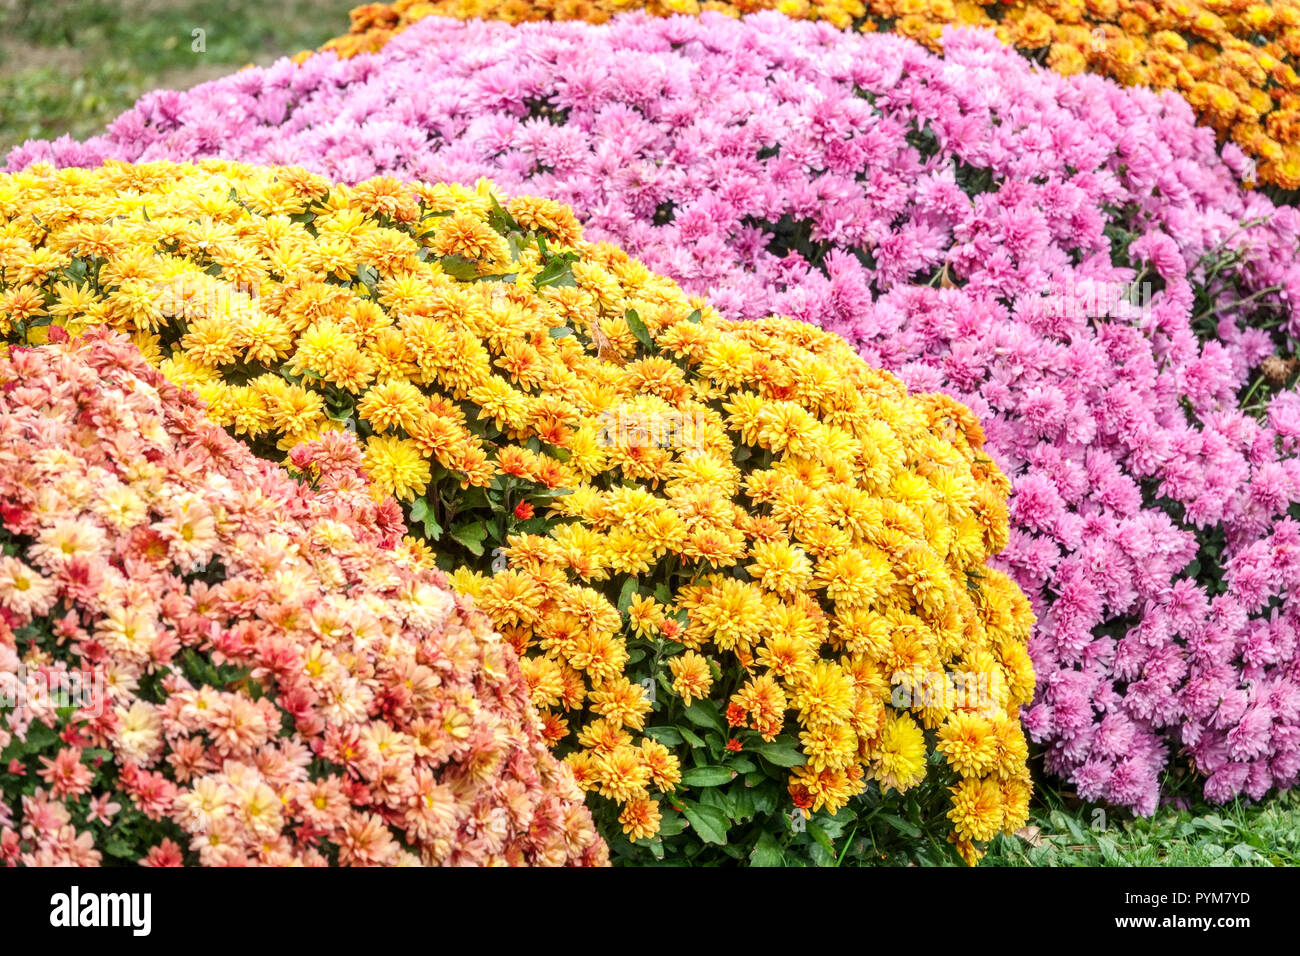 Beaucoup de fleurs, combinaison de couleurs Chrysanthème, fleurs d'automne dans le jardin, contraste et lit de fleurs colorées mamans de jardin d'octobre Banque D'Images